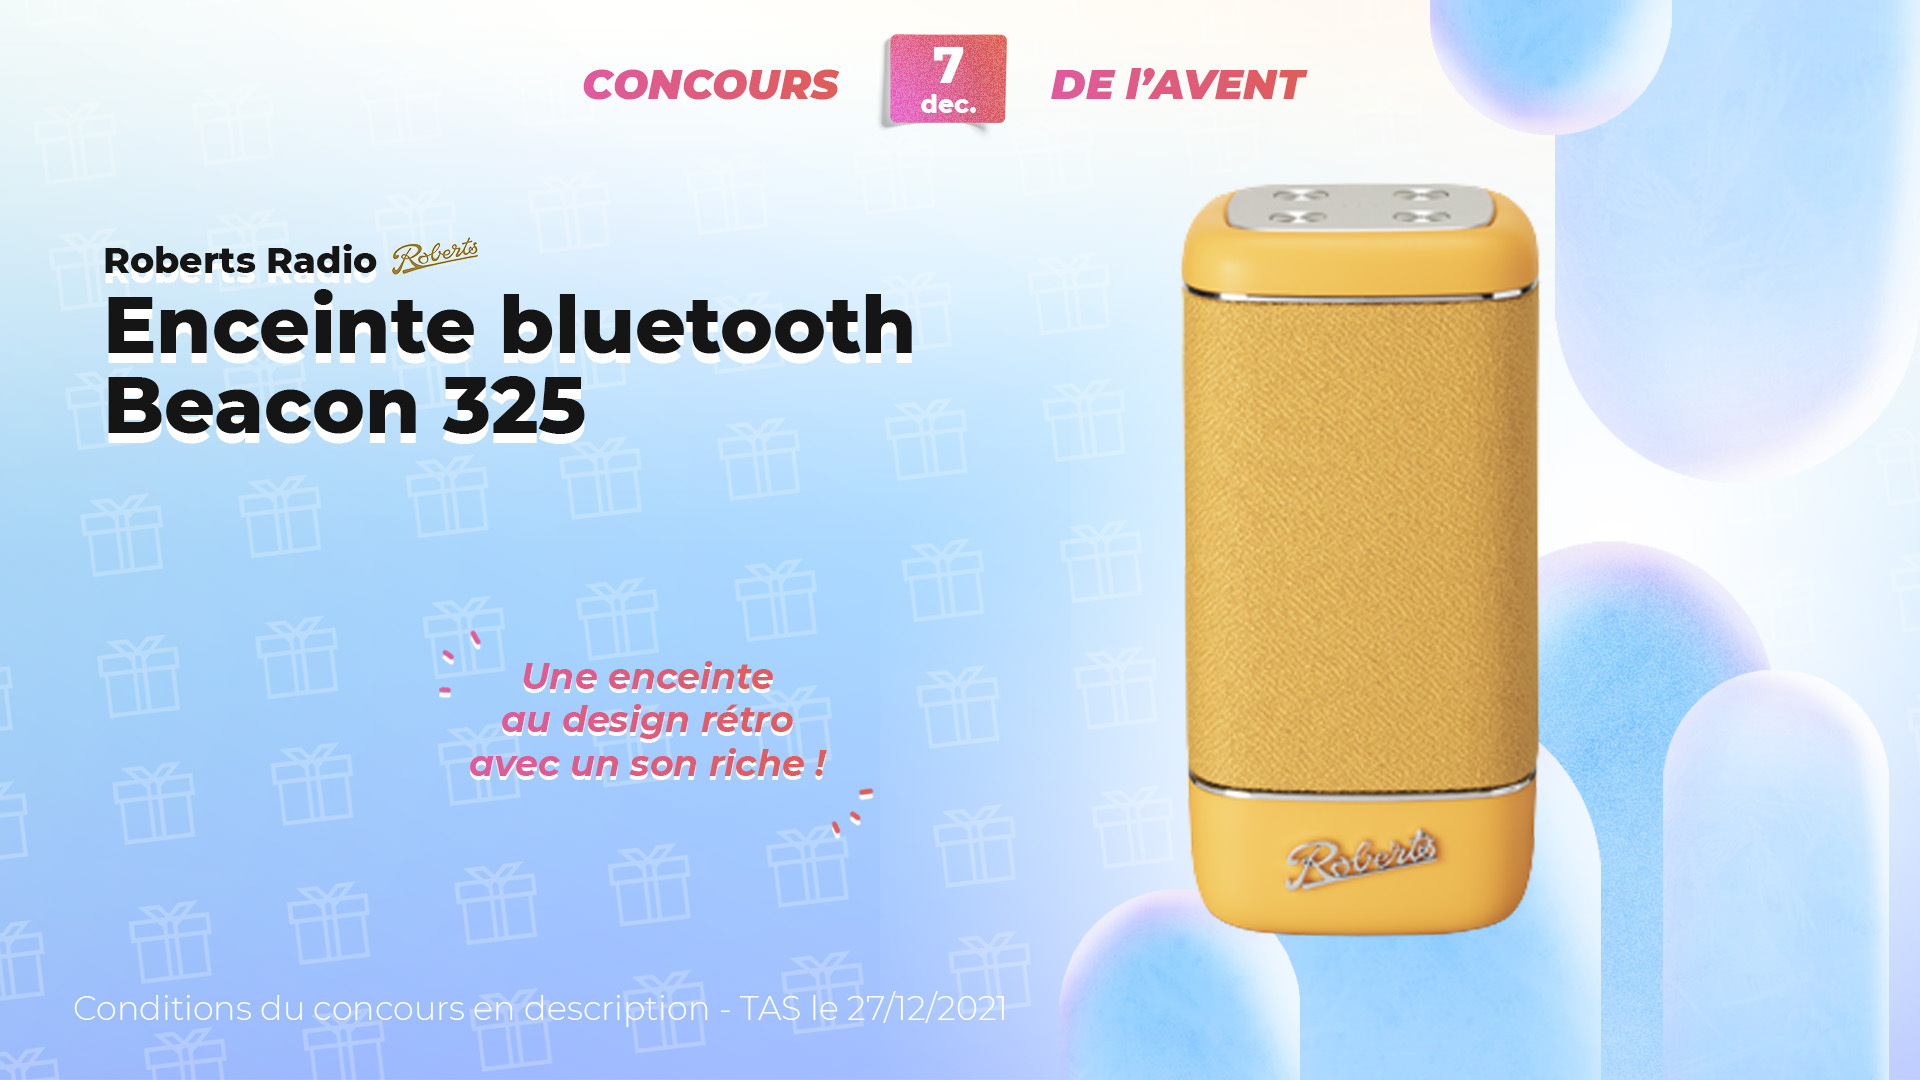 FrandroidOffreMoi une enceinte Bluetooth pour mettre l'ambiance en soirée